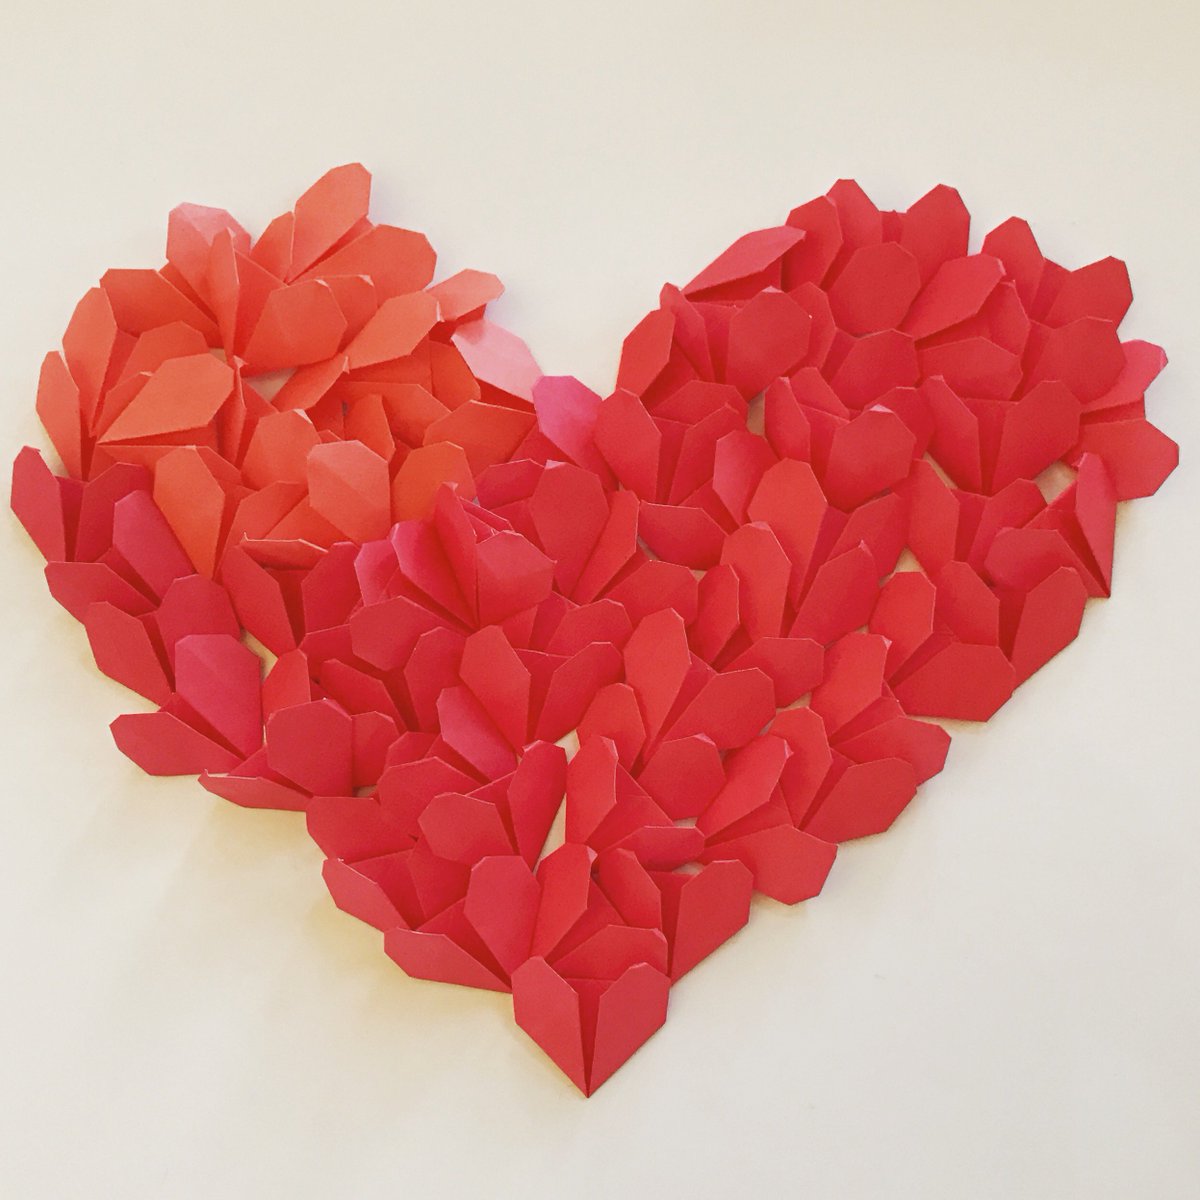 Оригами объемное сердце: Как сделать большое объемное сердце. Оригами сердечко из бумаги: пошаговая инструкция